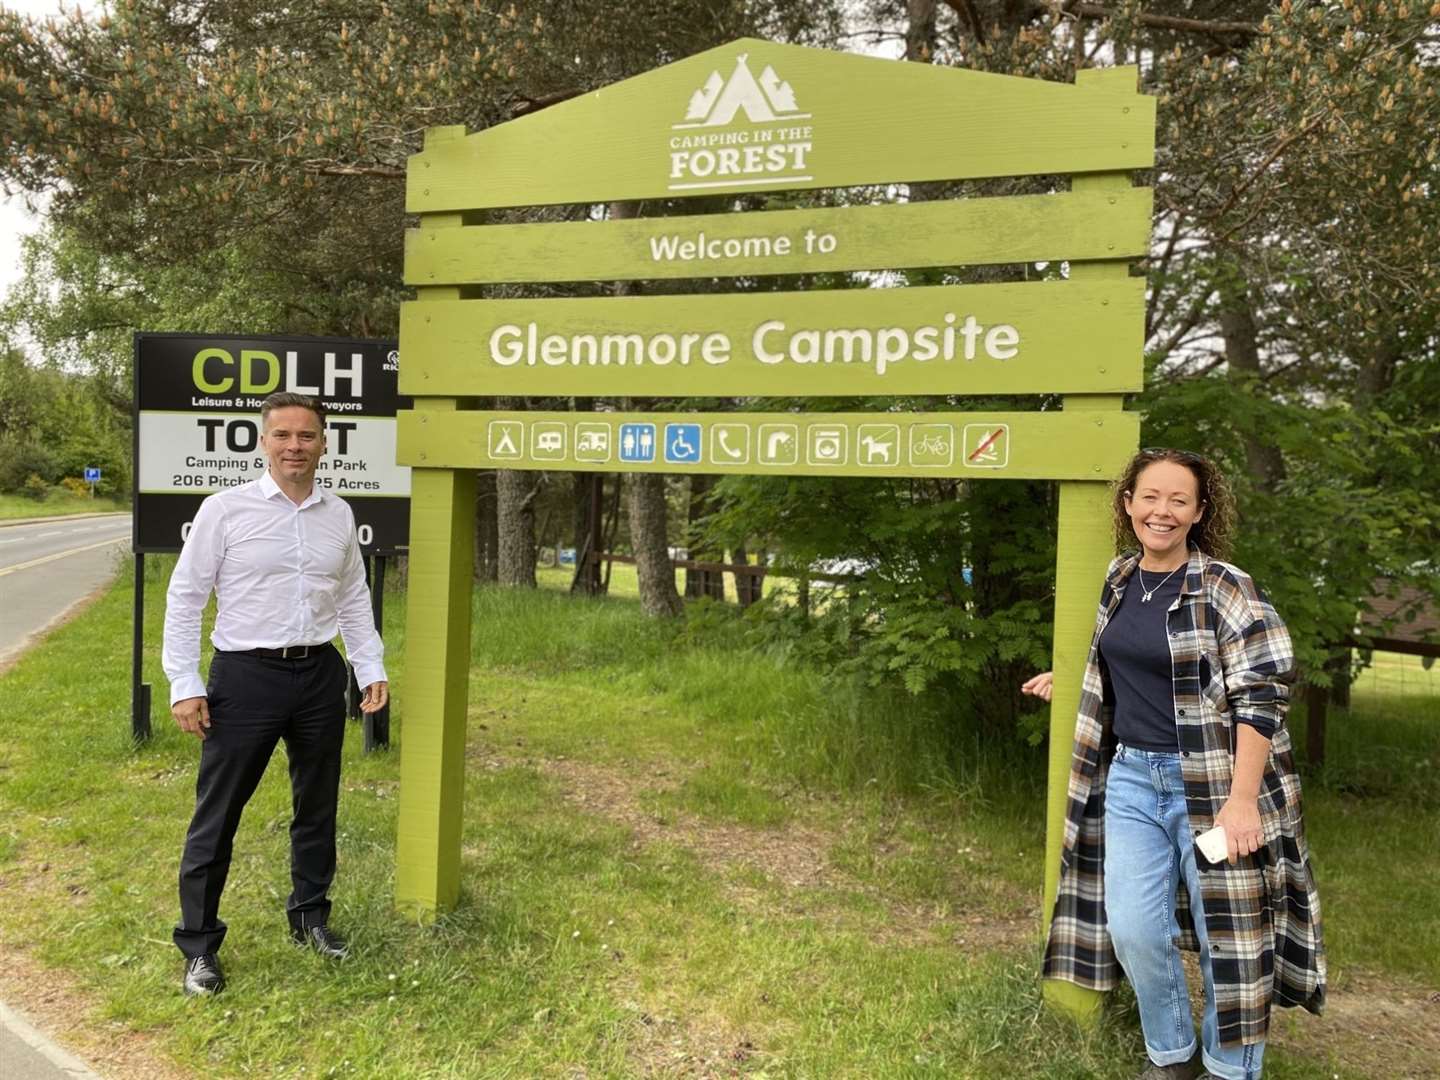 Duncan Swarbrick and Lee Bissett at Glenmore campsite.